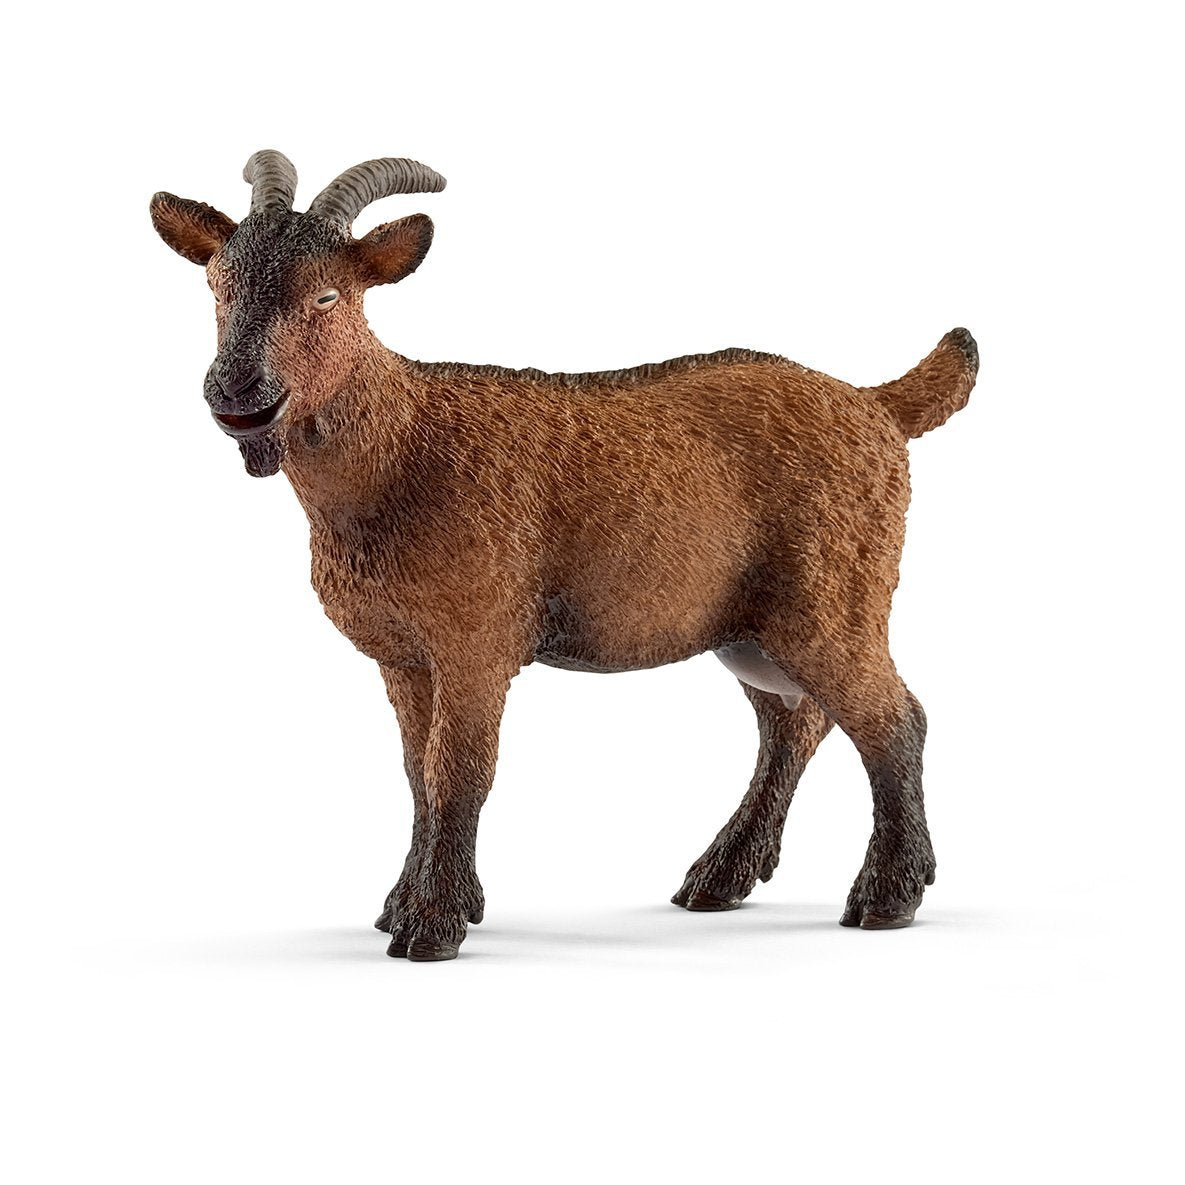 SL13828 Schleich Goat (1:24 Scale)